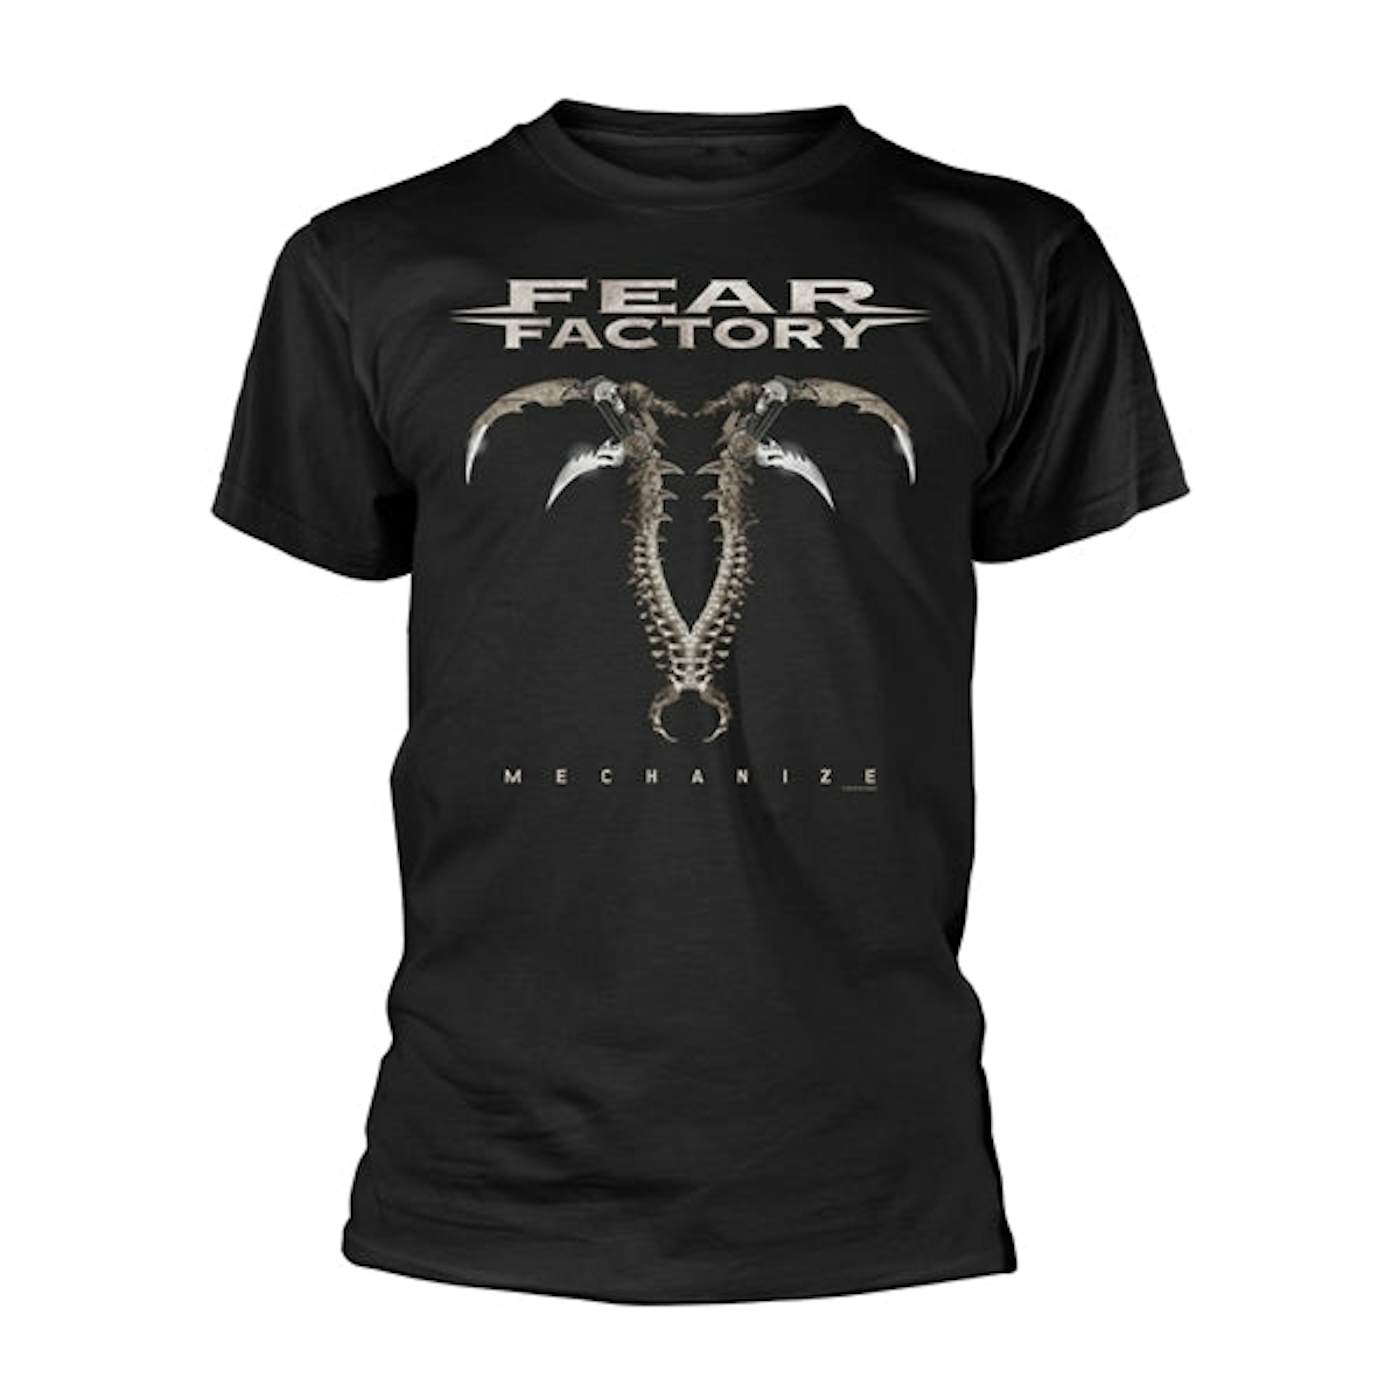 Fear Factory T-Shirt - Mechanize